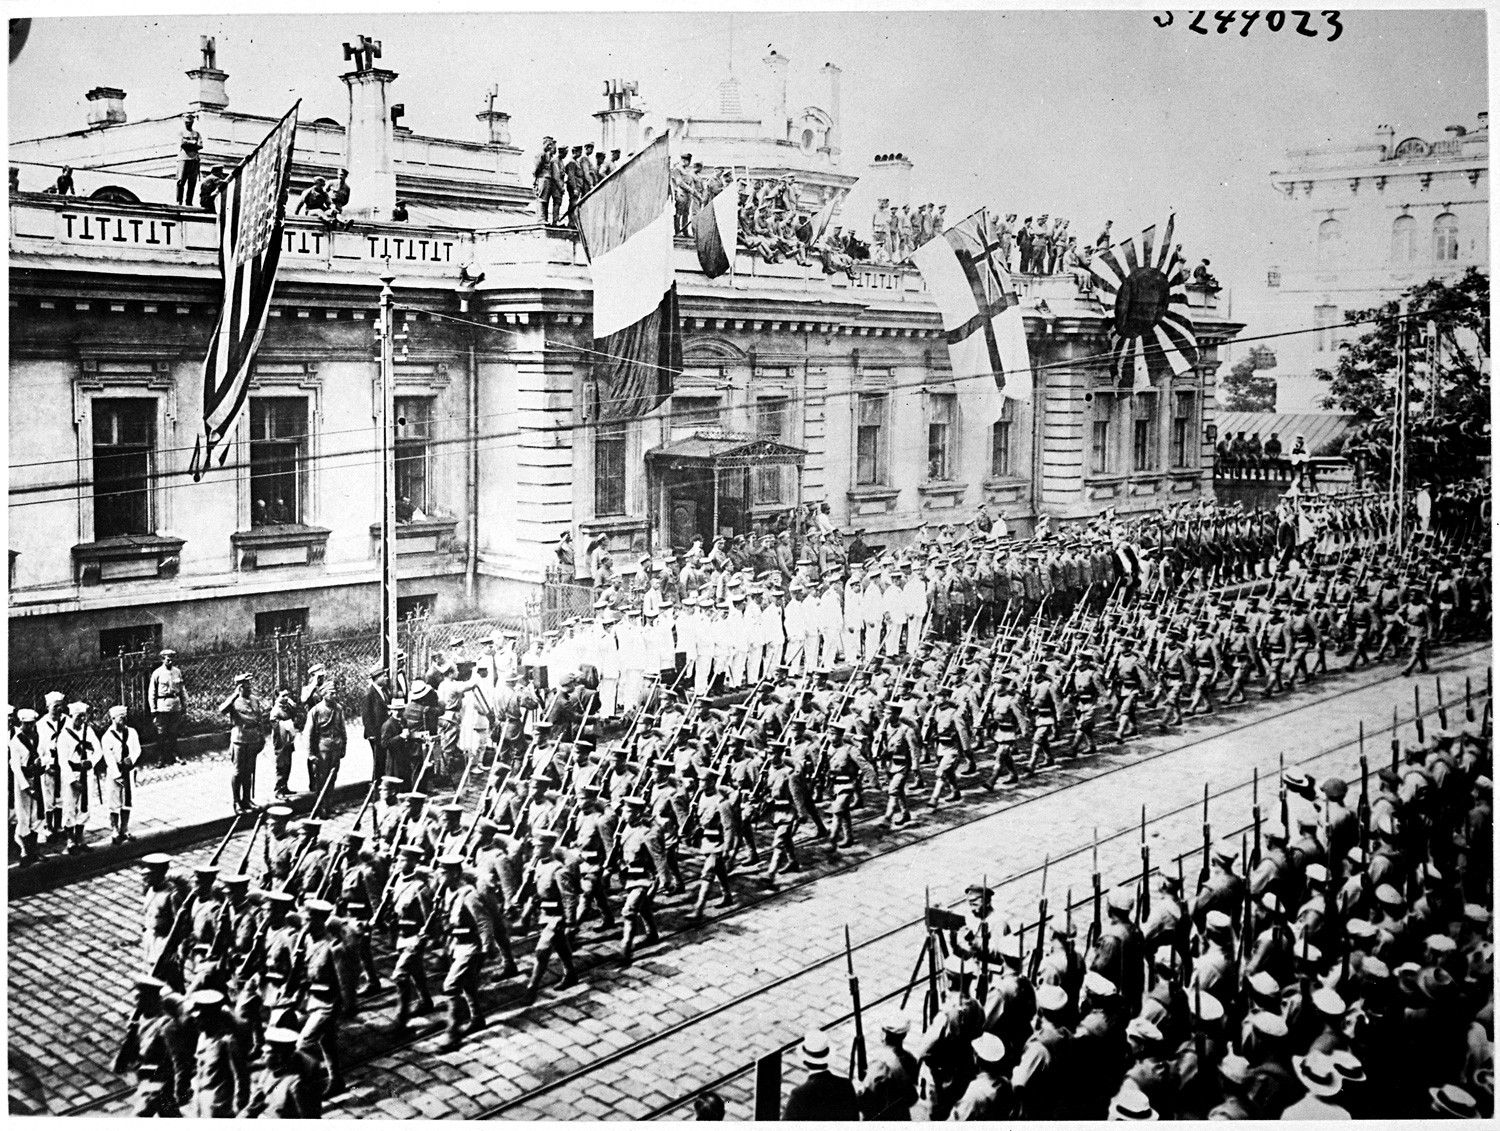 Vladivostok, Russie. Des soldats et des marins de nombreux pays sont alignés devant le bâtiment du quartier général des Alliés.